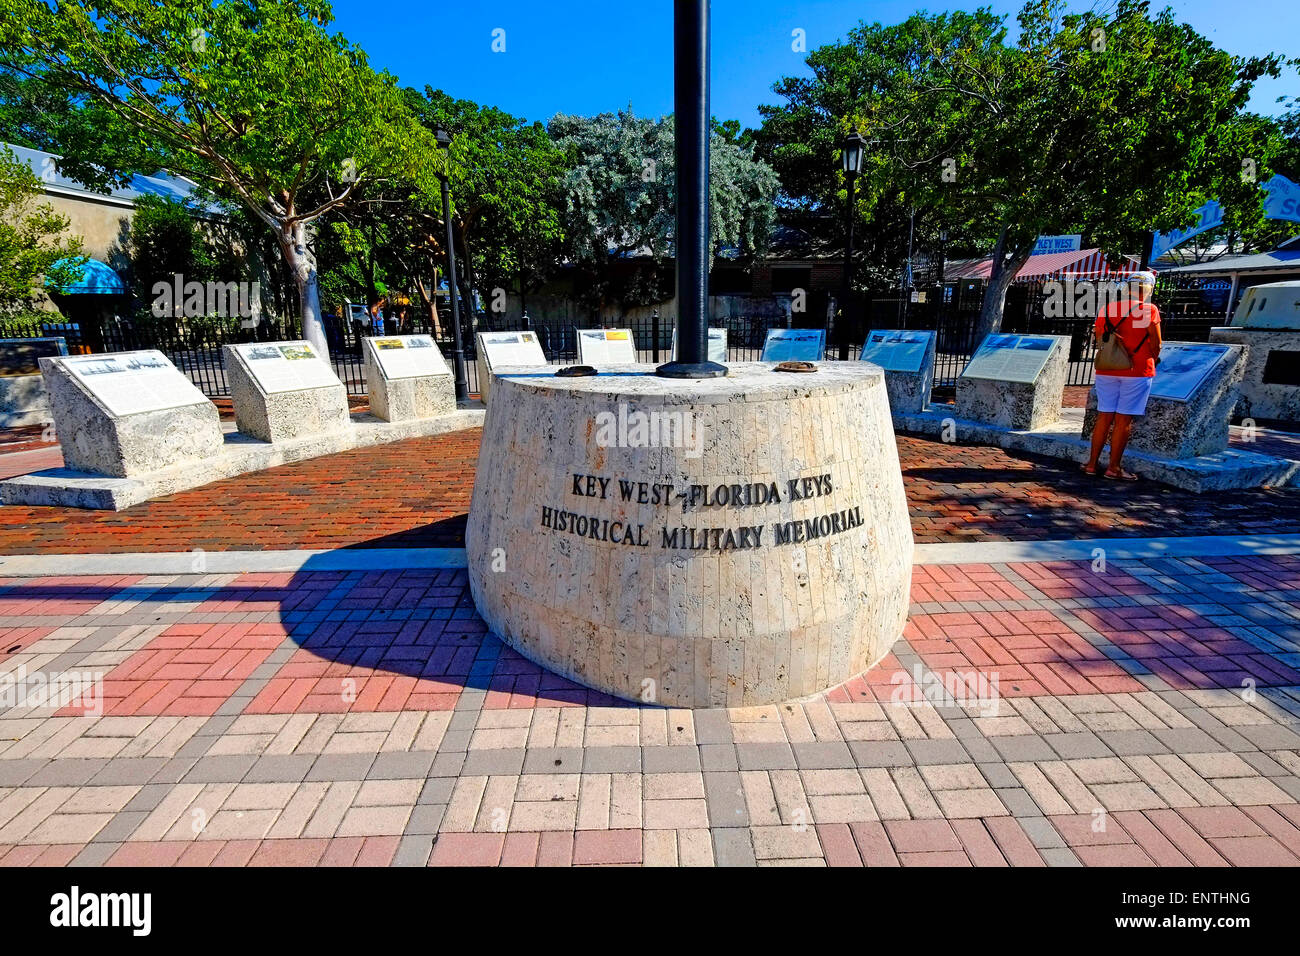 Key West Florida FL destinazione per Western Caraibi Crusie da Tampa storico memoriale militare Foto Stock